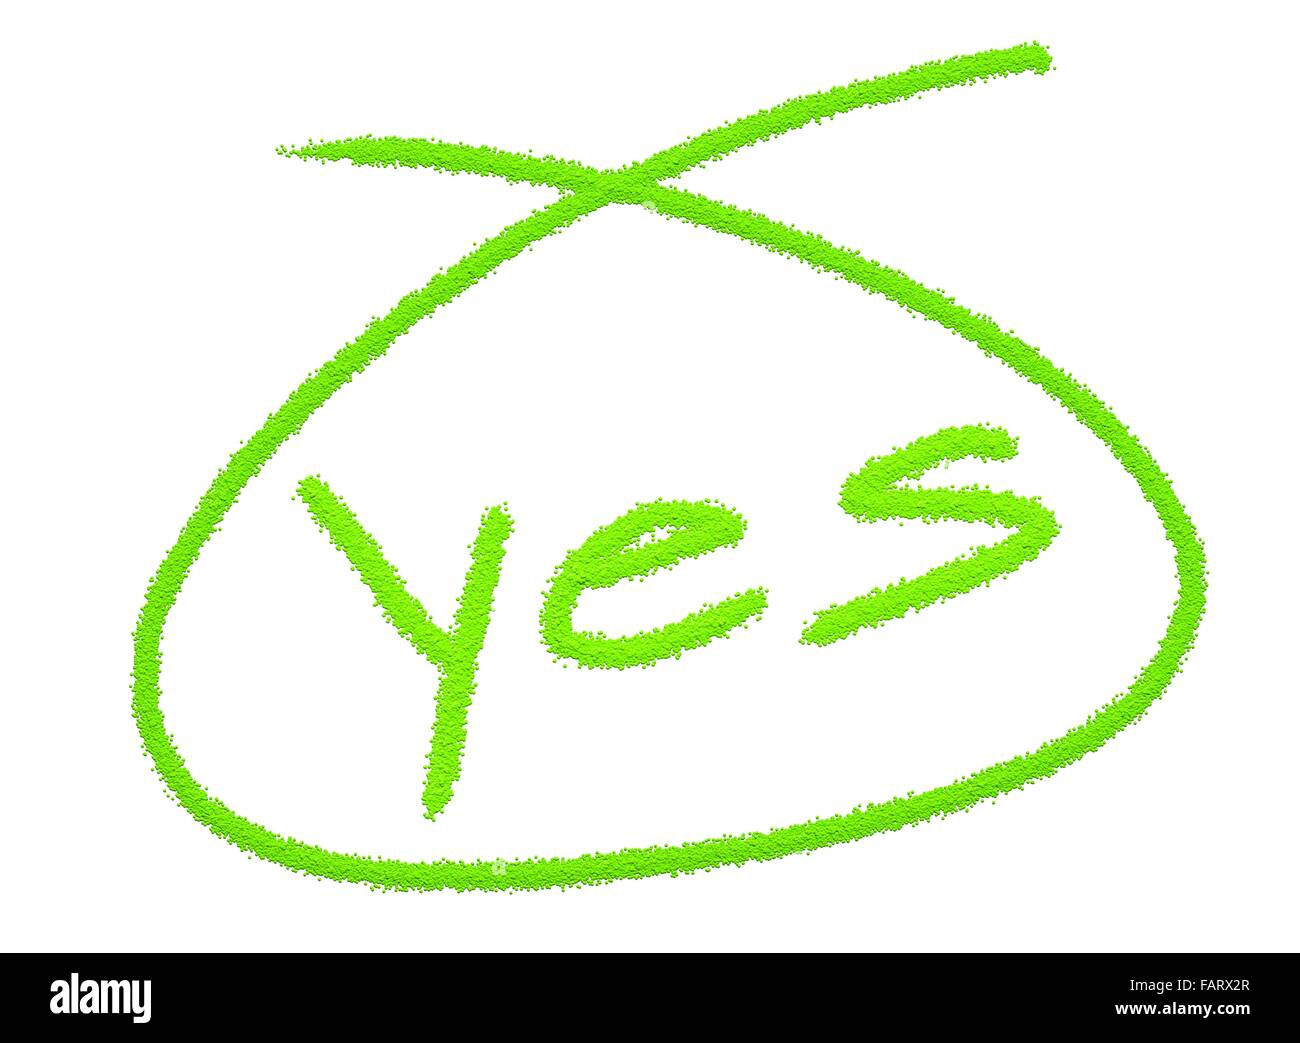 Actitud positiva el concepto, el color verde de la palabra aceptar en un círculo aislado sobre fondo blanco. Foto de stock